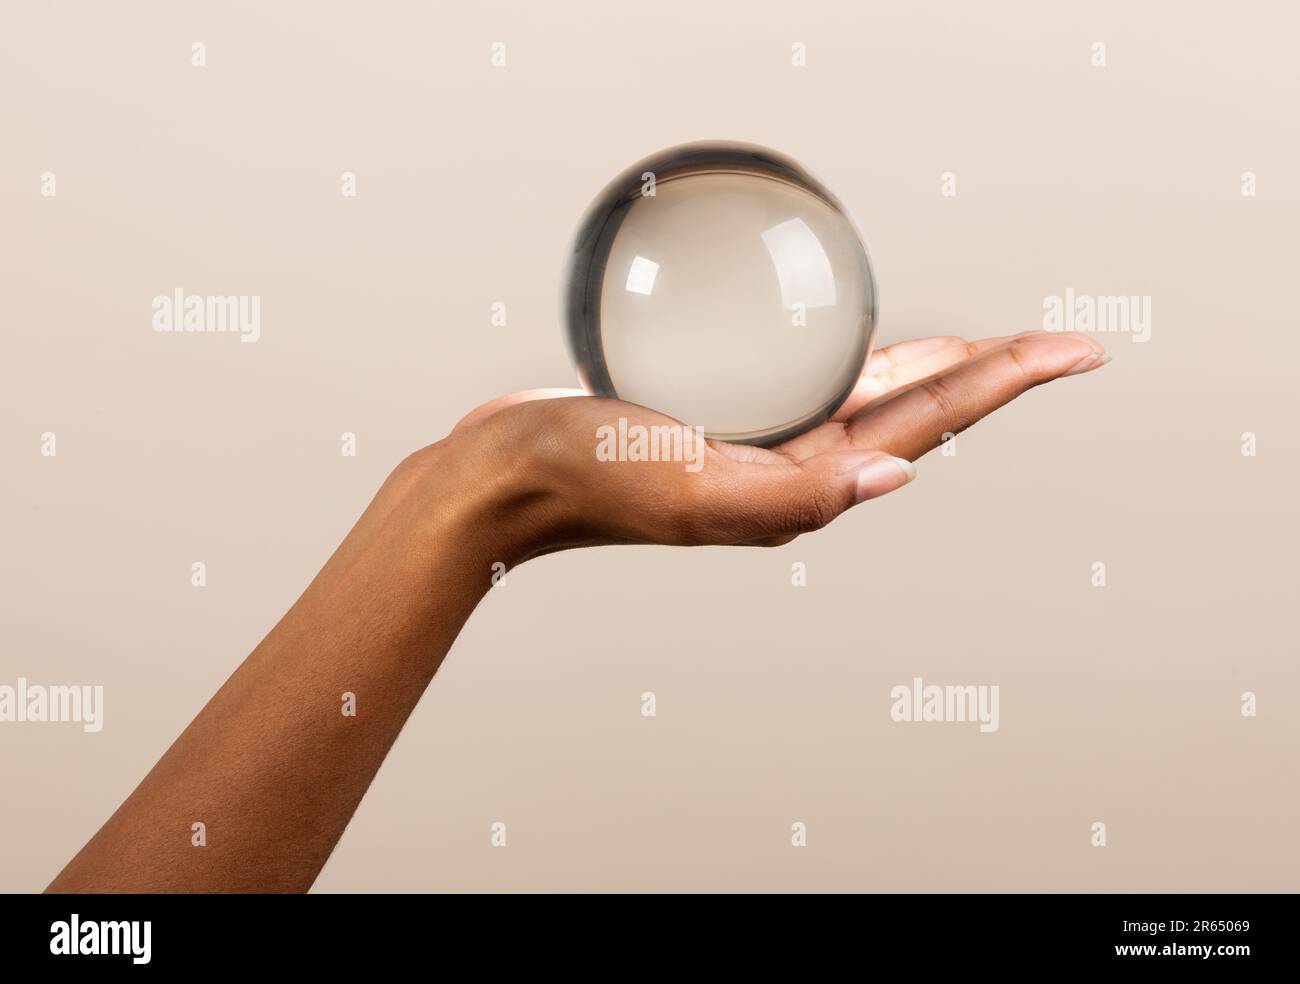 Eine nicht wiedererkennbare afroamerikanische Frau, die eine transparente Glaskugel zeigt, die einer magischen Kristallkugel ähnelt, vor einem beigen Hintergrund Stockfoto